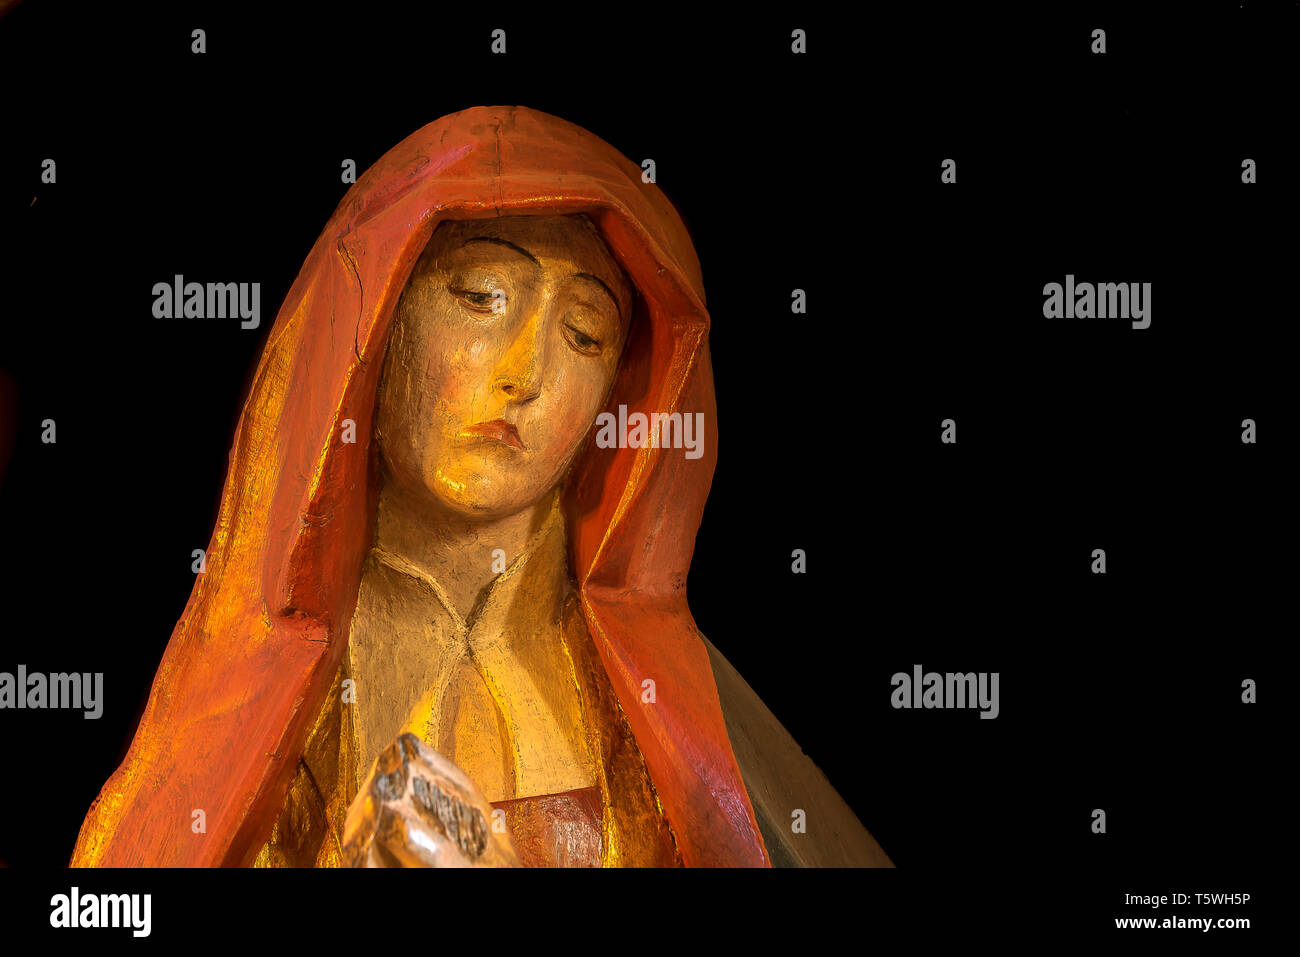 Una scultura medievale della Vergine Maria con il dolore nel suo volto, il dolore di Madonna Thirsted, Danimarca, 17 aprile 2019 Foto Stock